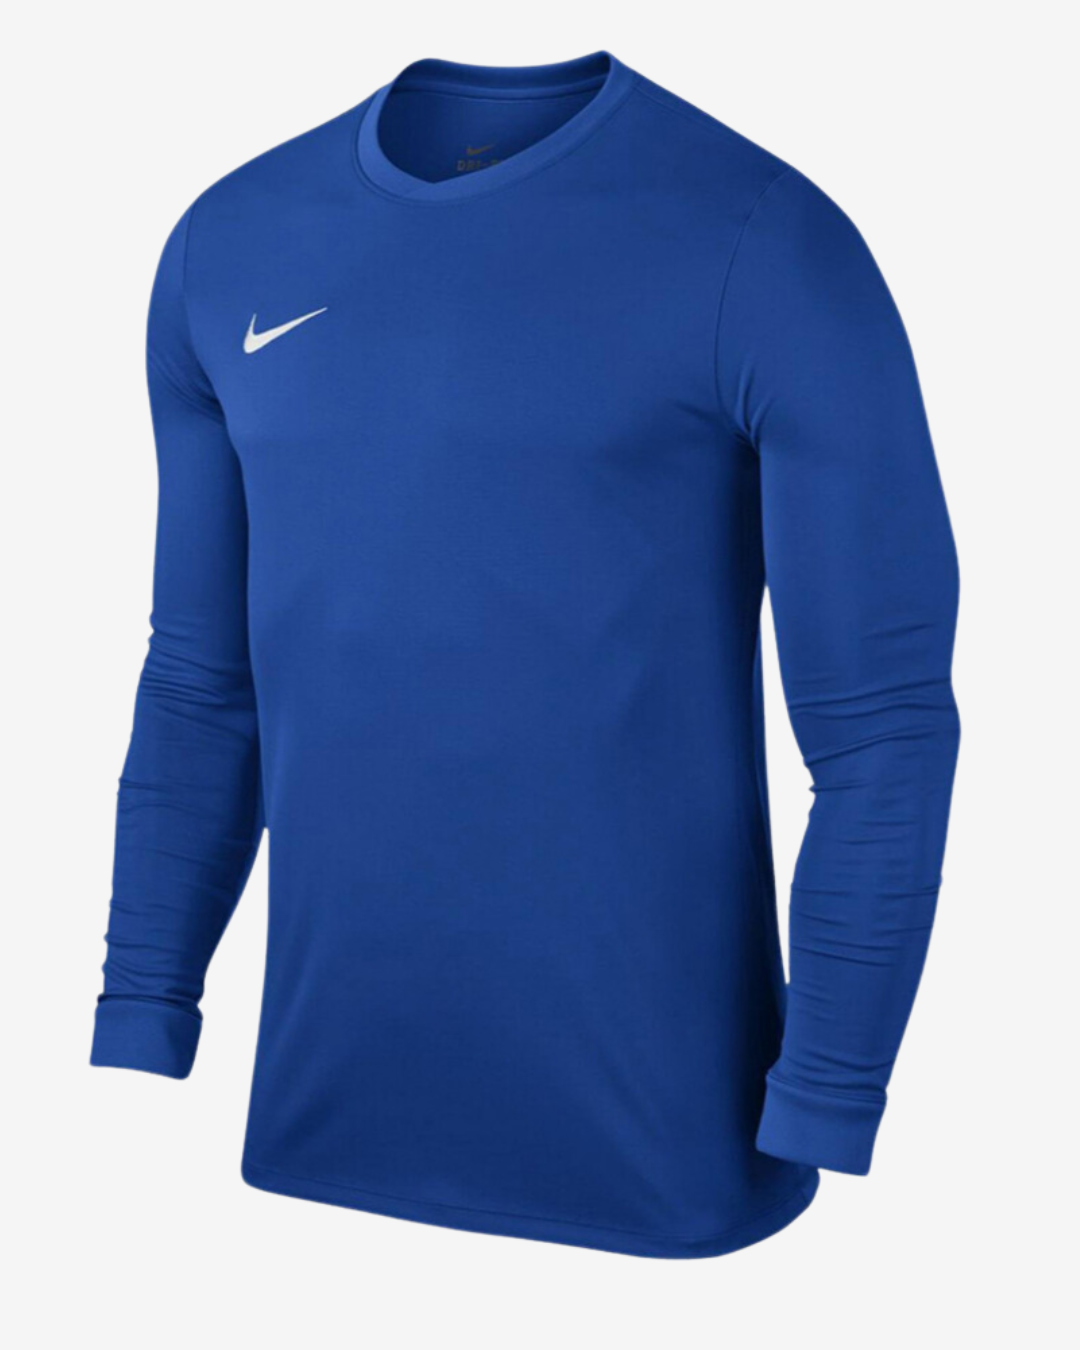 Billede af Nike Dri-fit park 7 langærmet t-shirt - Blå - Str. M - Modish.dk